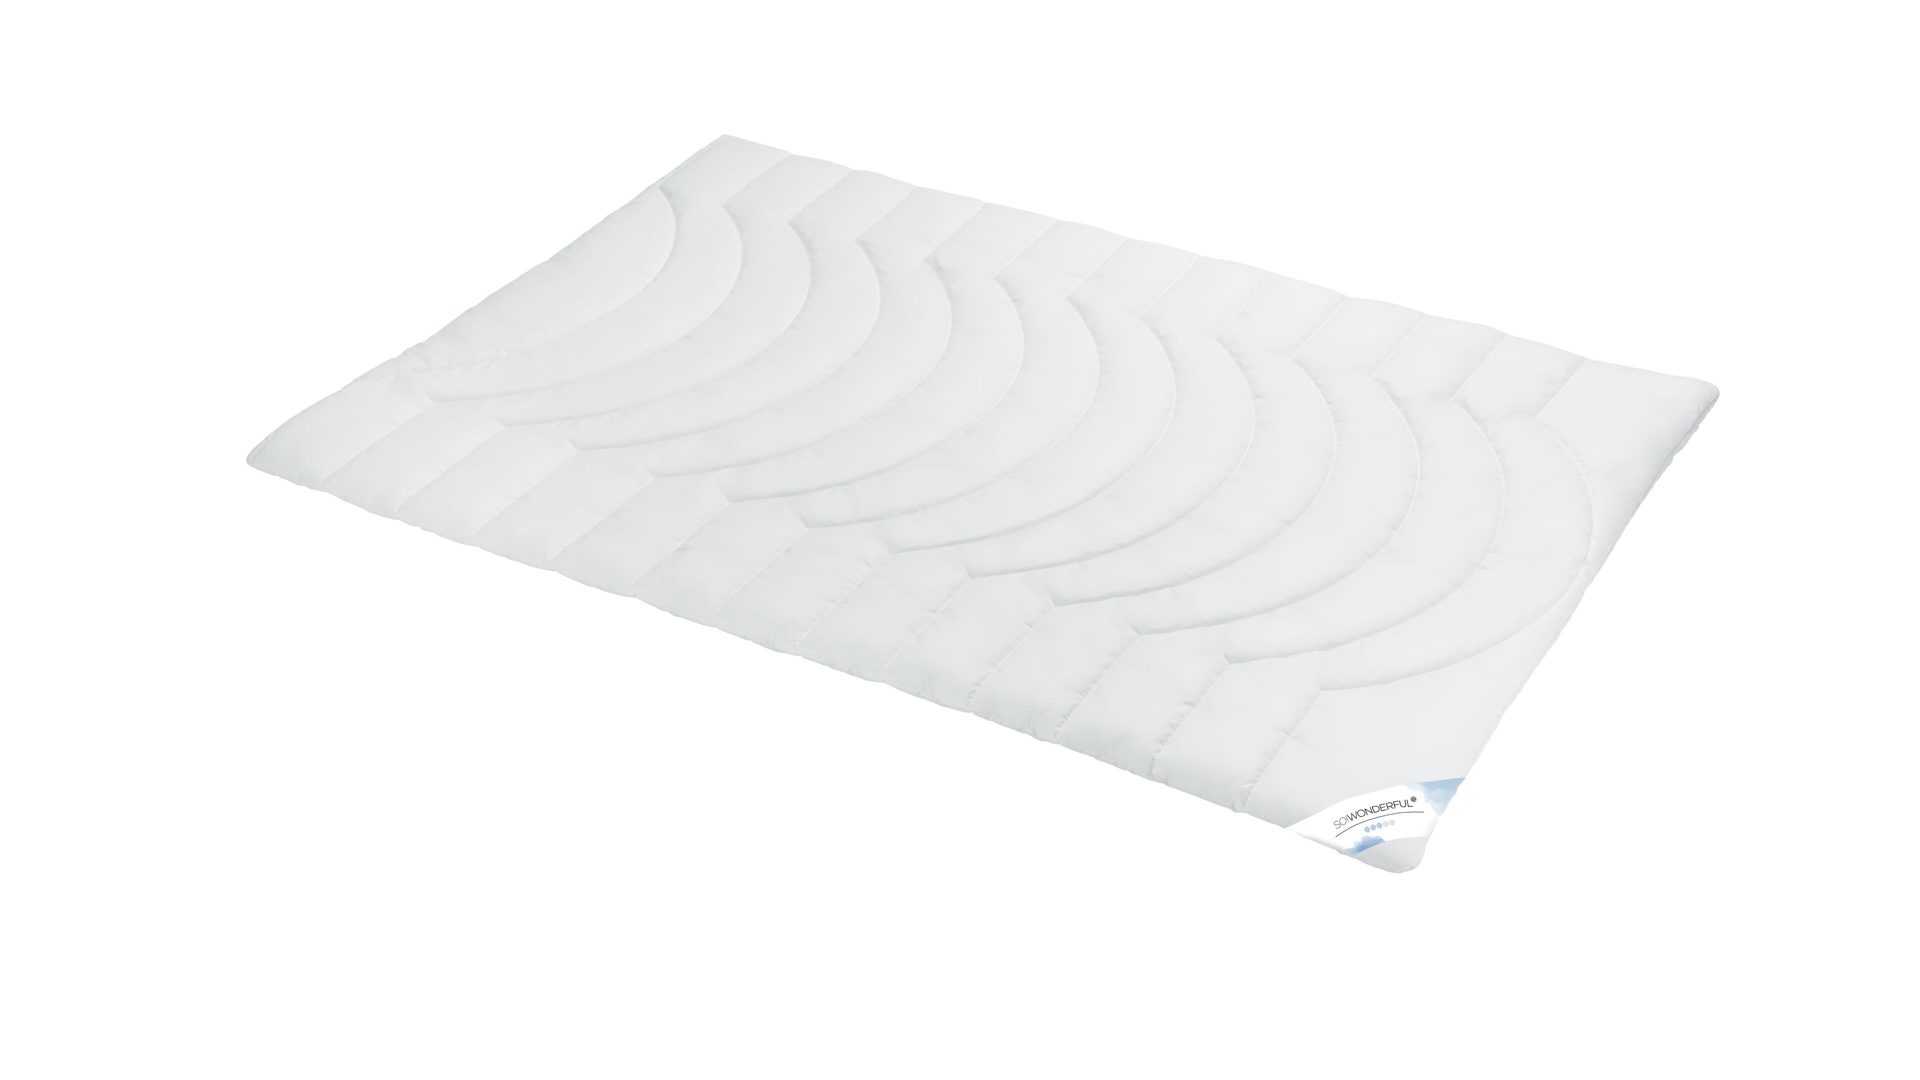 Faserdecke SO!WONDERFUL aus Stoff in Weiß SO!WONDERFUL Faserdecke Premium 3D-Hohlfaser, 700 g – ca. 135 x 200 cm